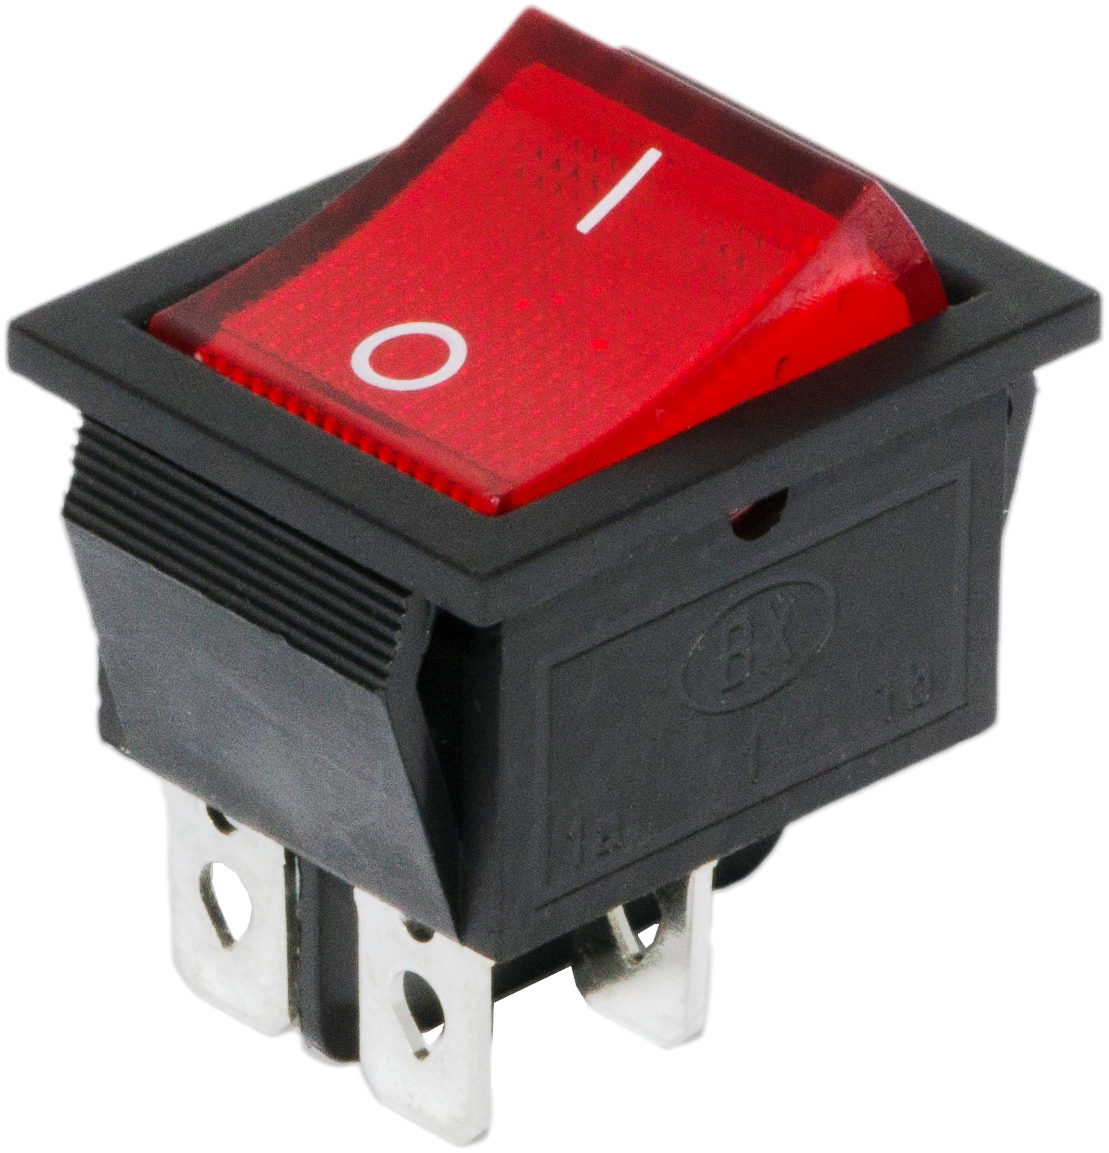 10 Pcs x Red Neon Light Lamp On/Off SPST Boat Rocker Switch 15A/250V 20A/125V AC 